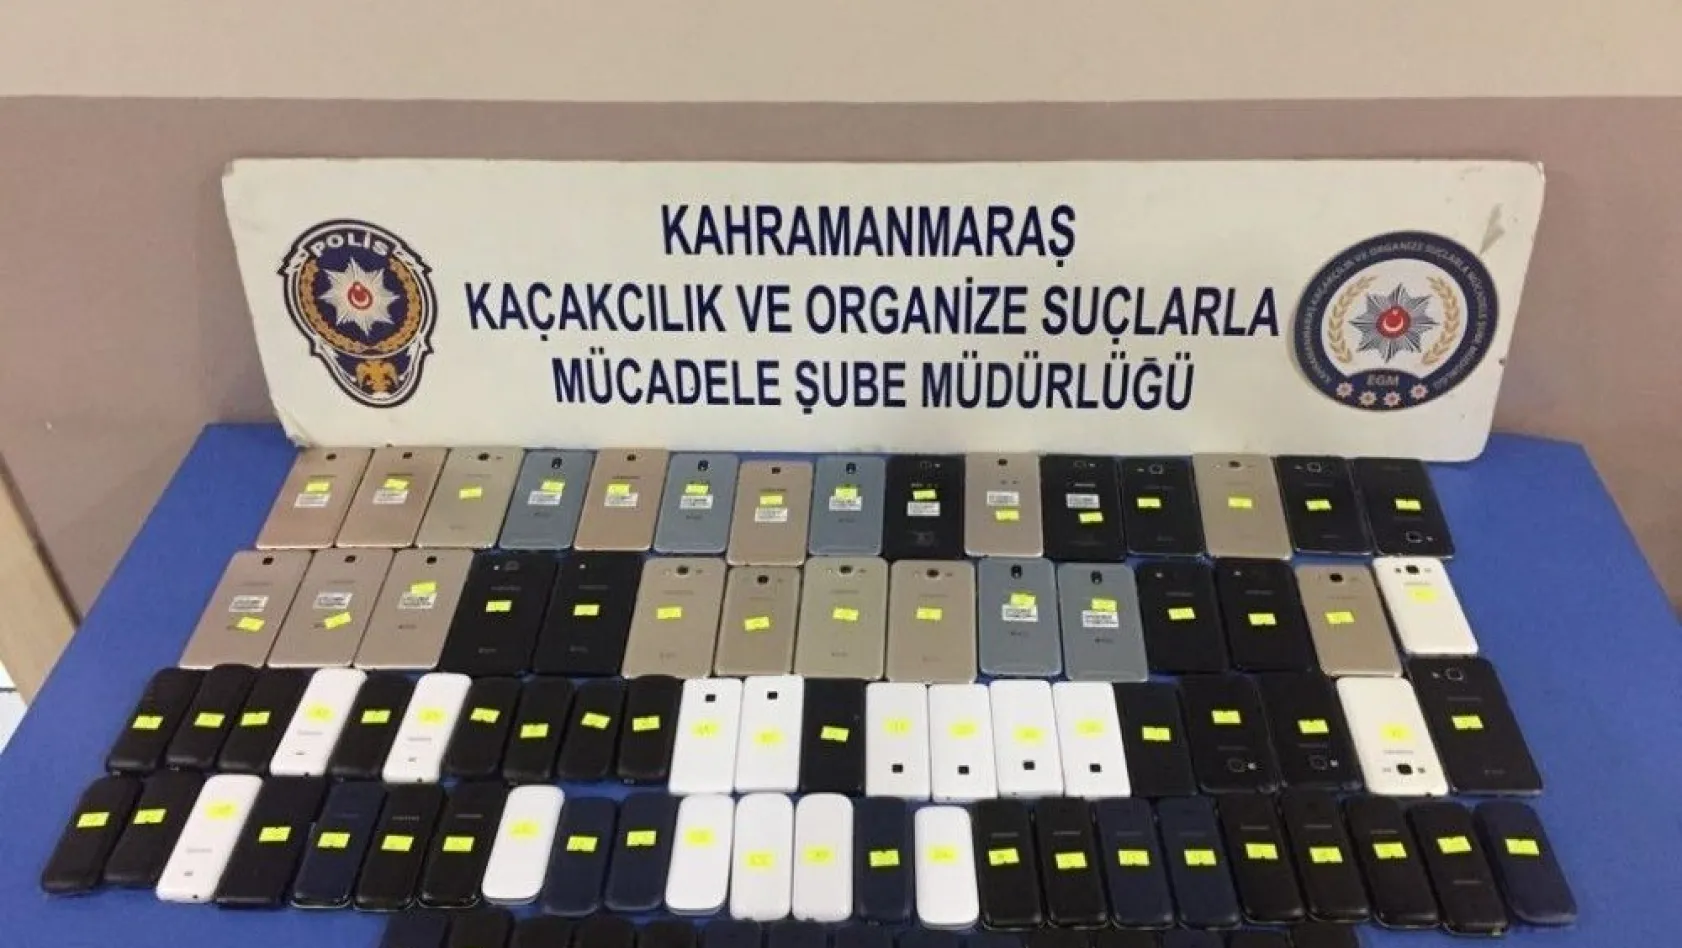 Kahramanmaraş'ta 91 adet kaçak telefon ele geçirildi
